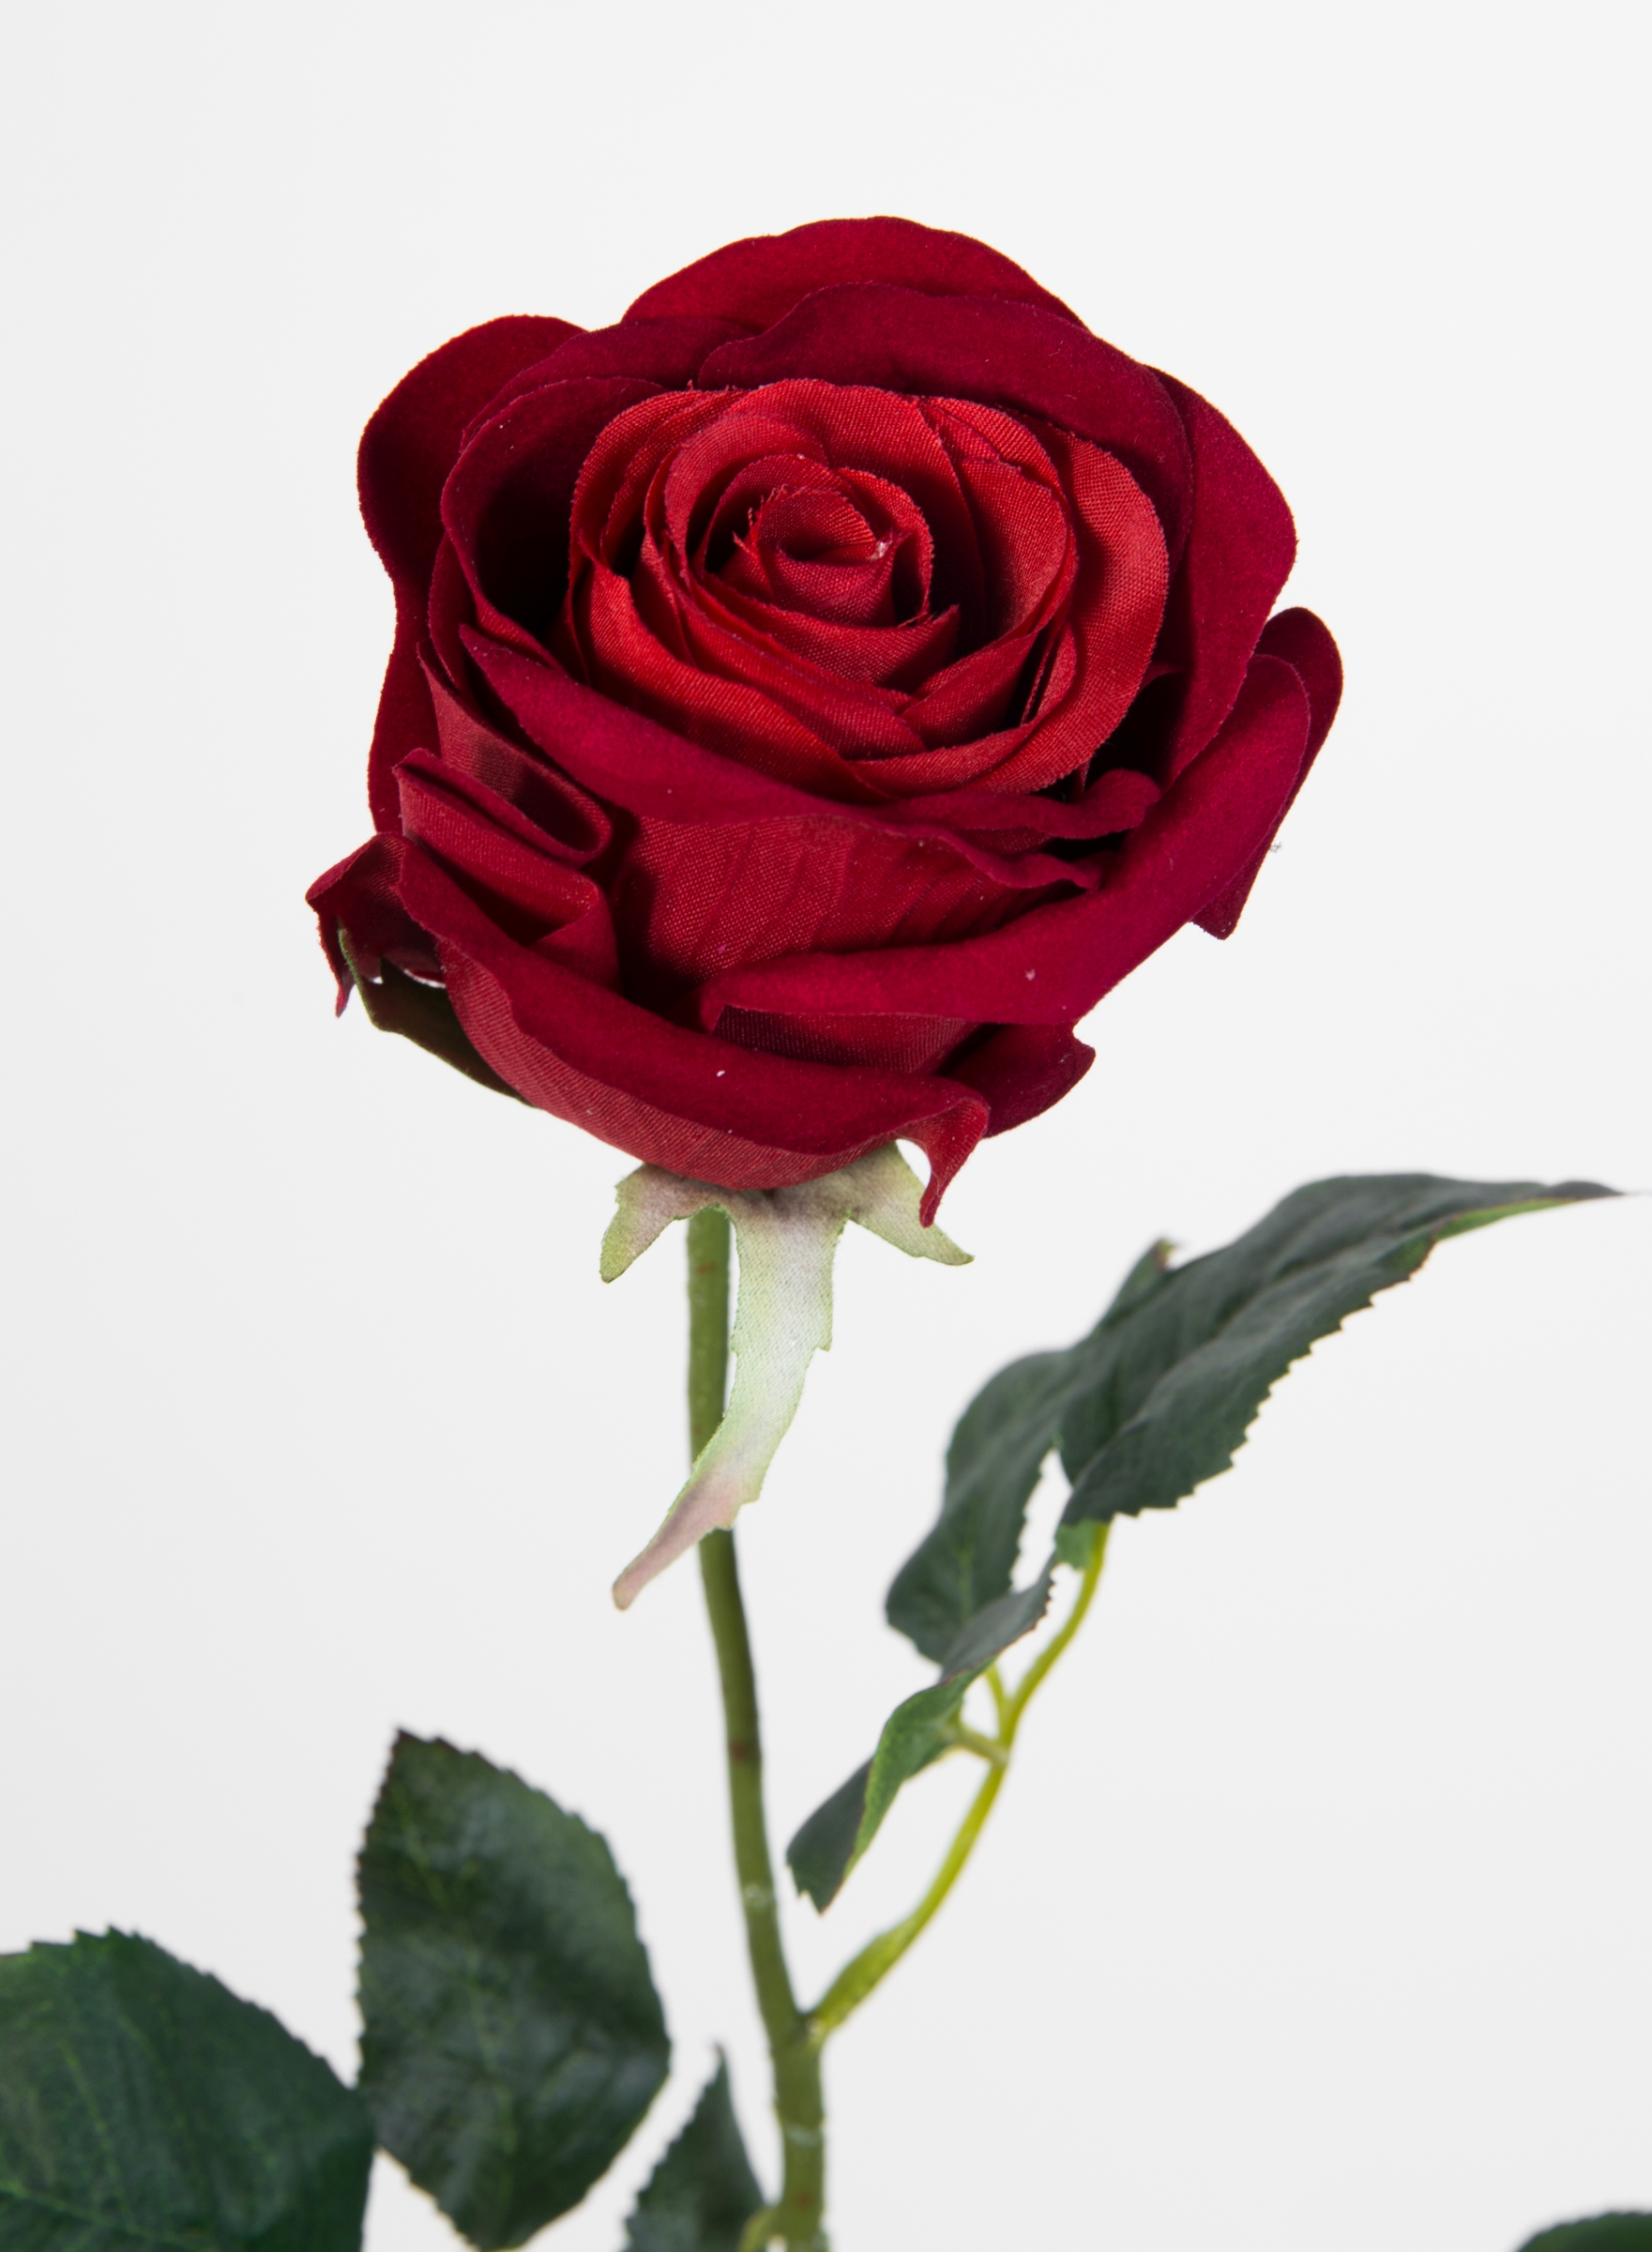 rot Stück Rose 12 Rosen Baccararose Blumen Seidenblumen Kunstblumen PM 68cm künstliche